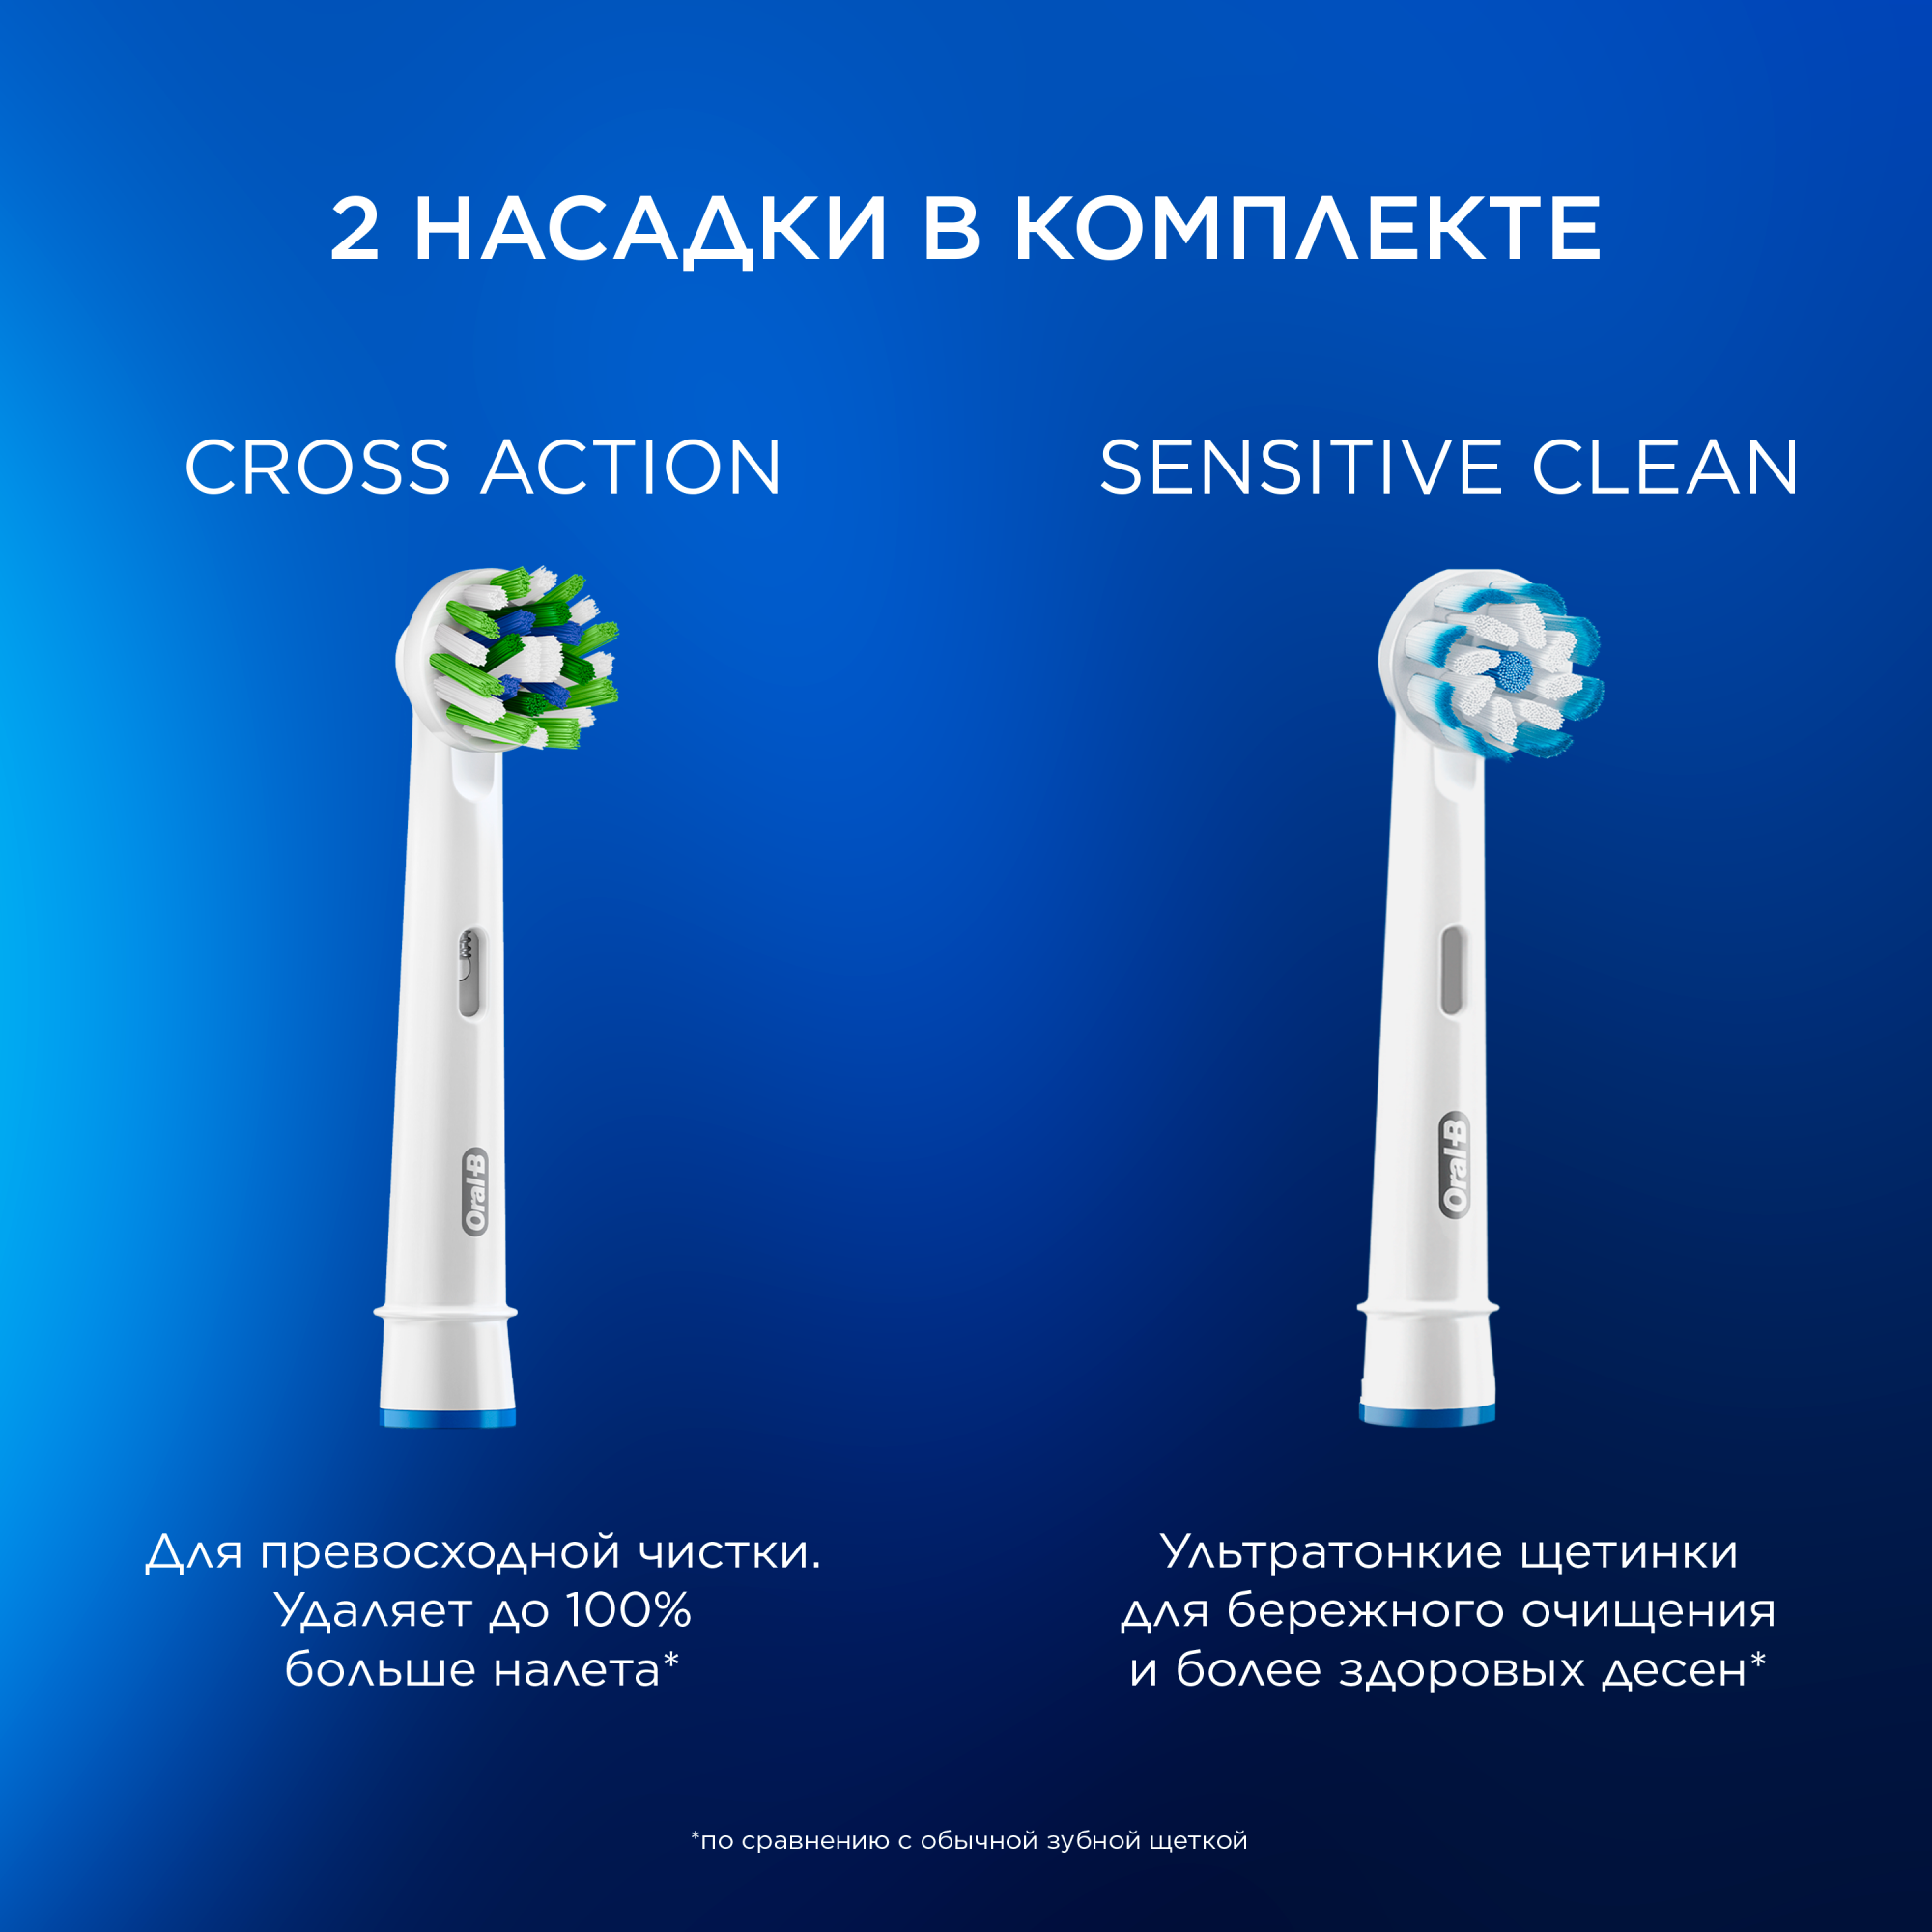  электрическая зубная щётка Oral-B Vitality Pro с 2 сменными .